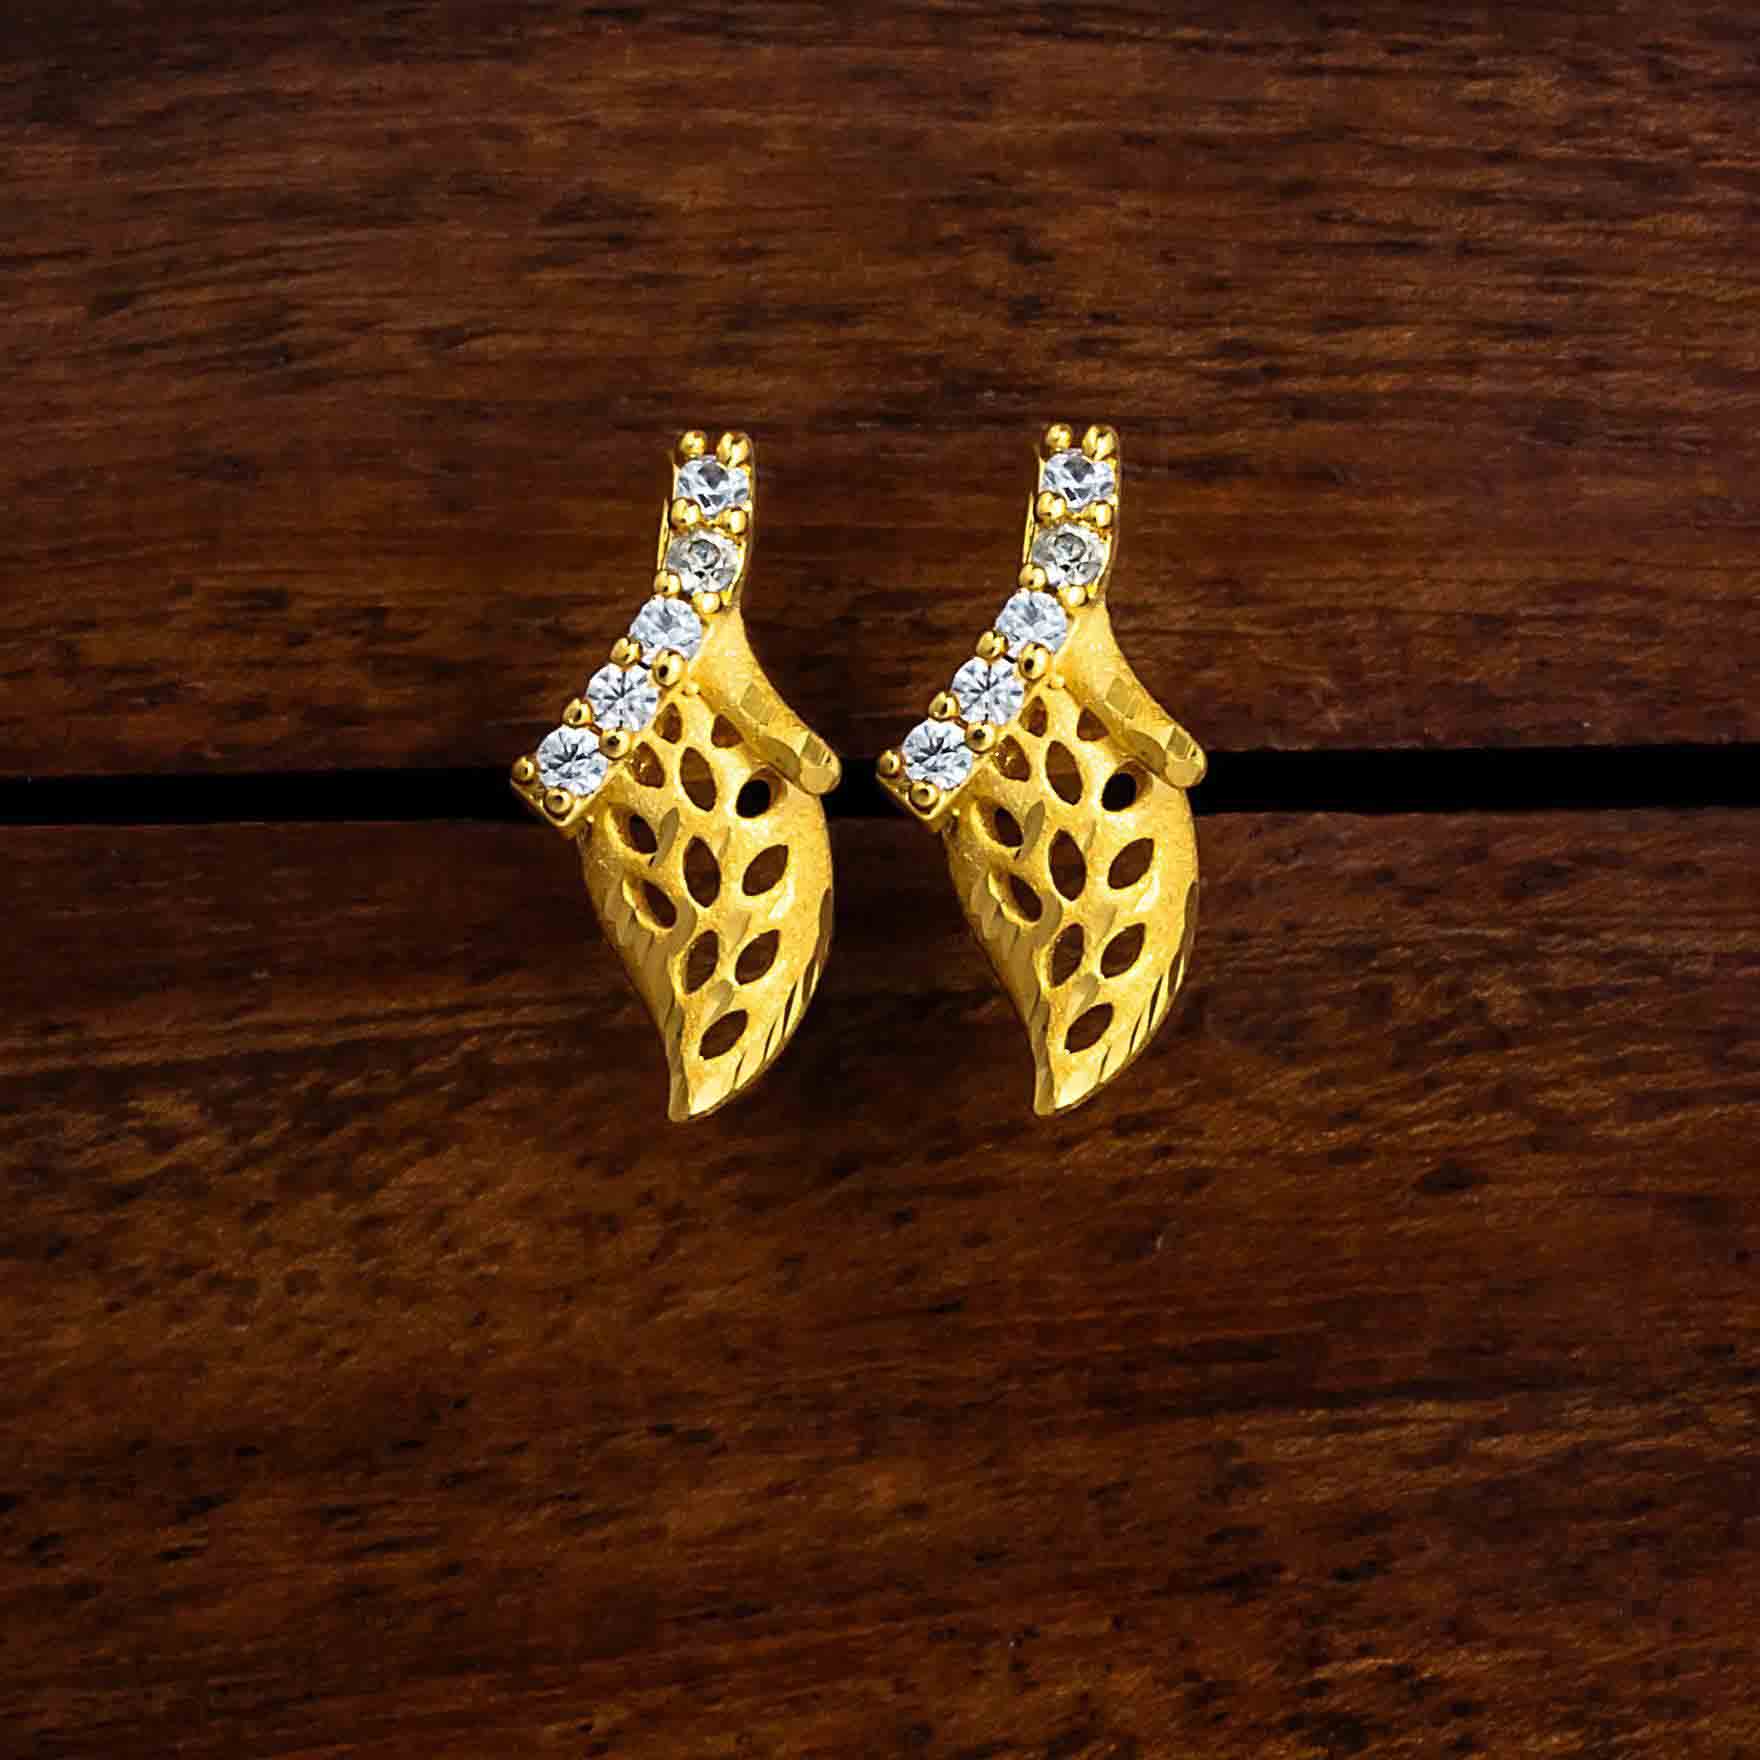 Trending Gold Layered Studs earrings for Women